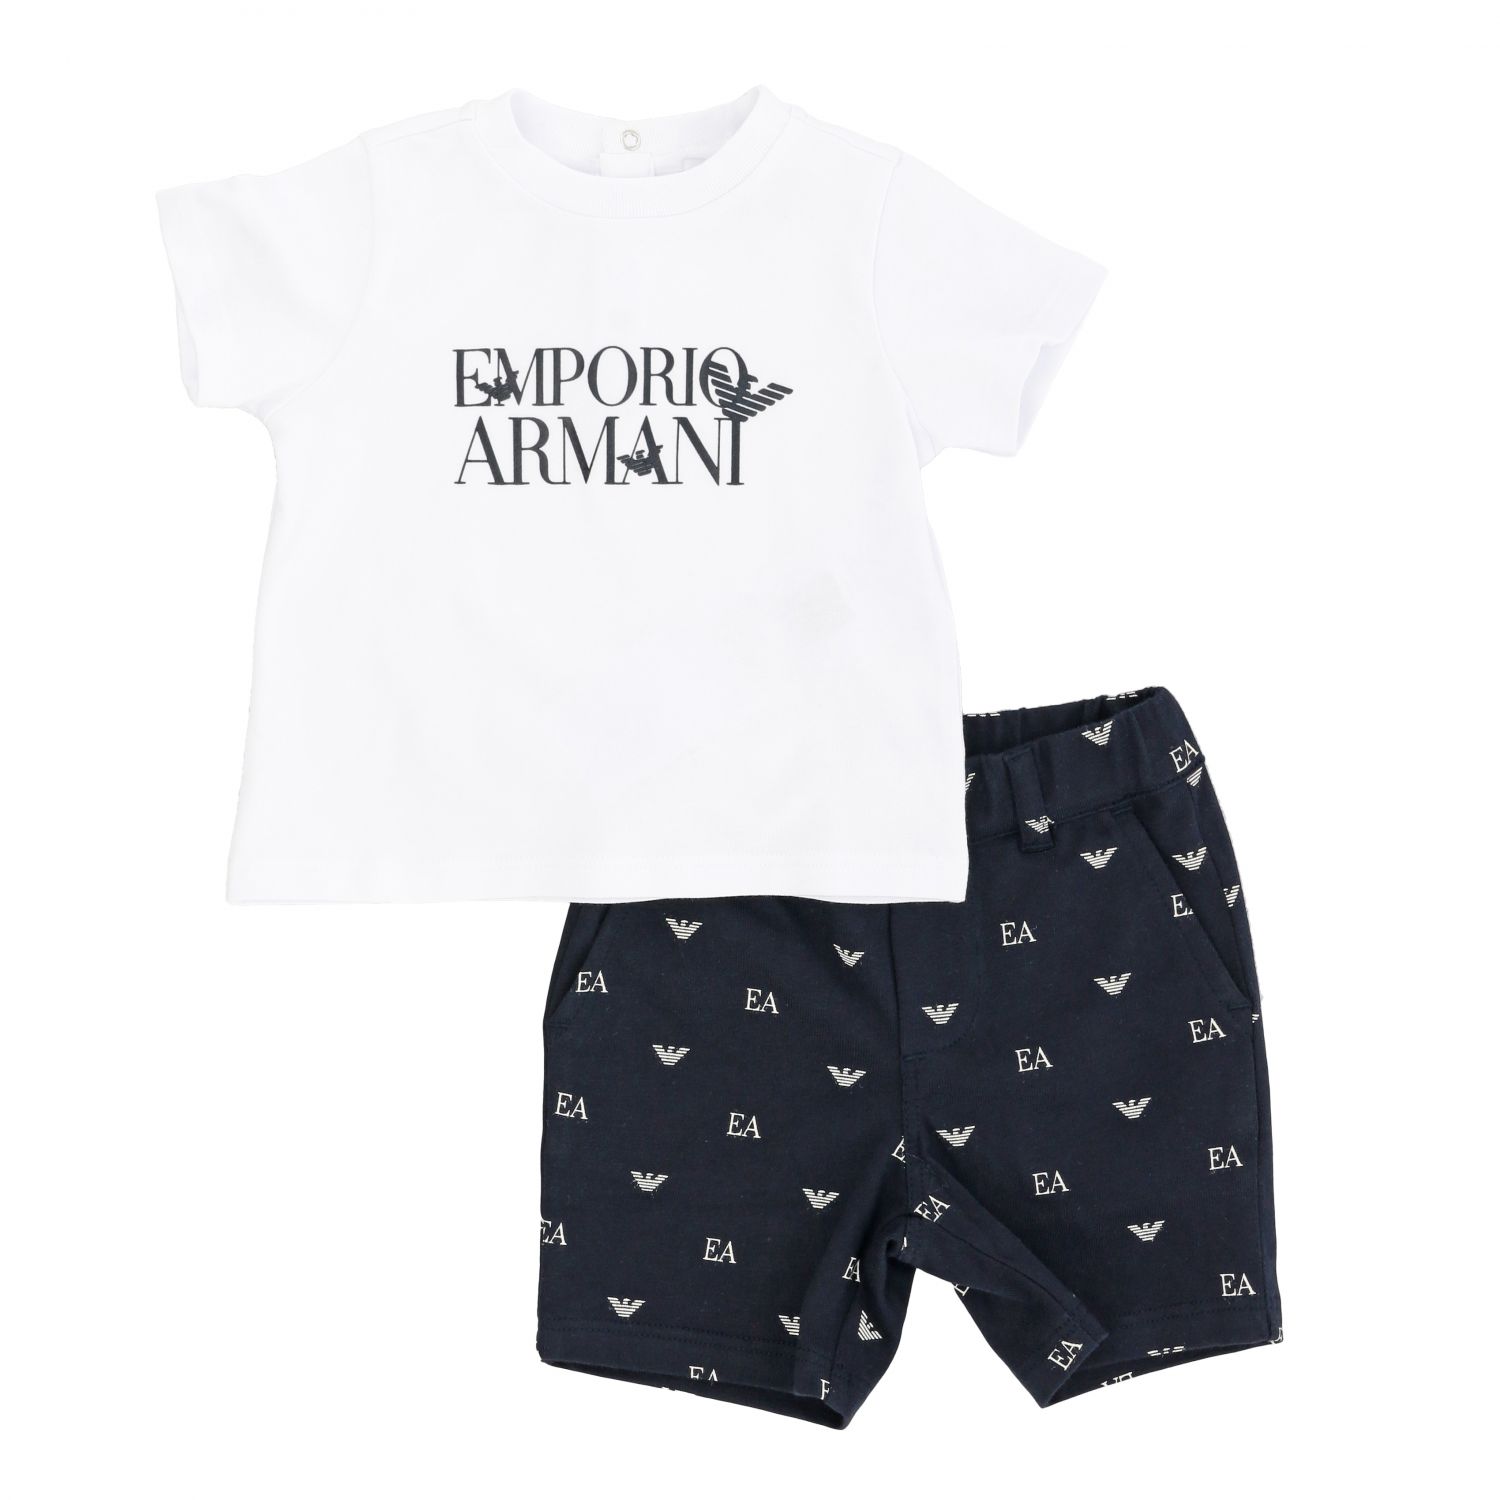 giorgio armani baby clothes